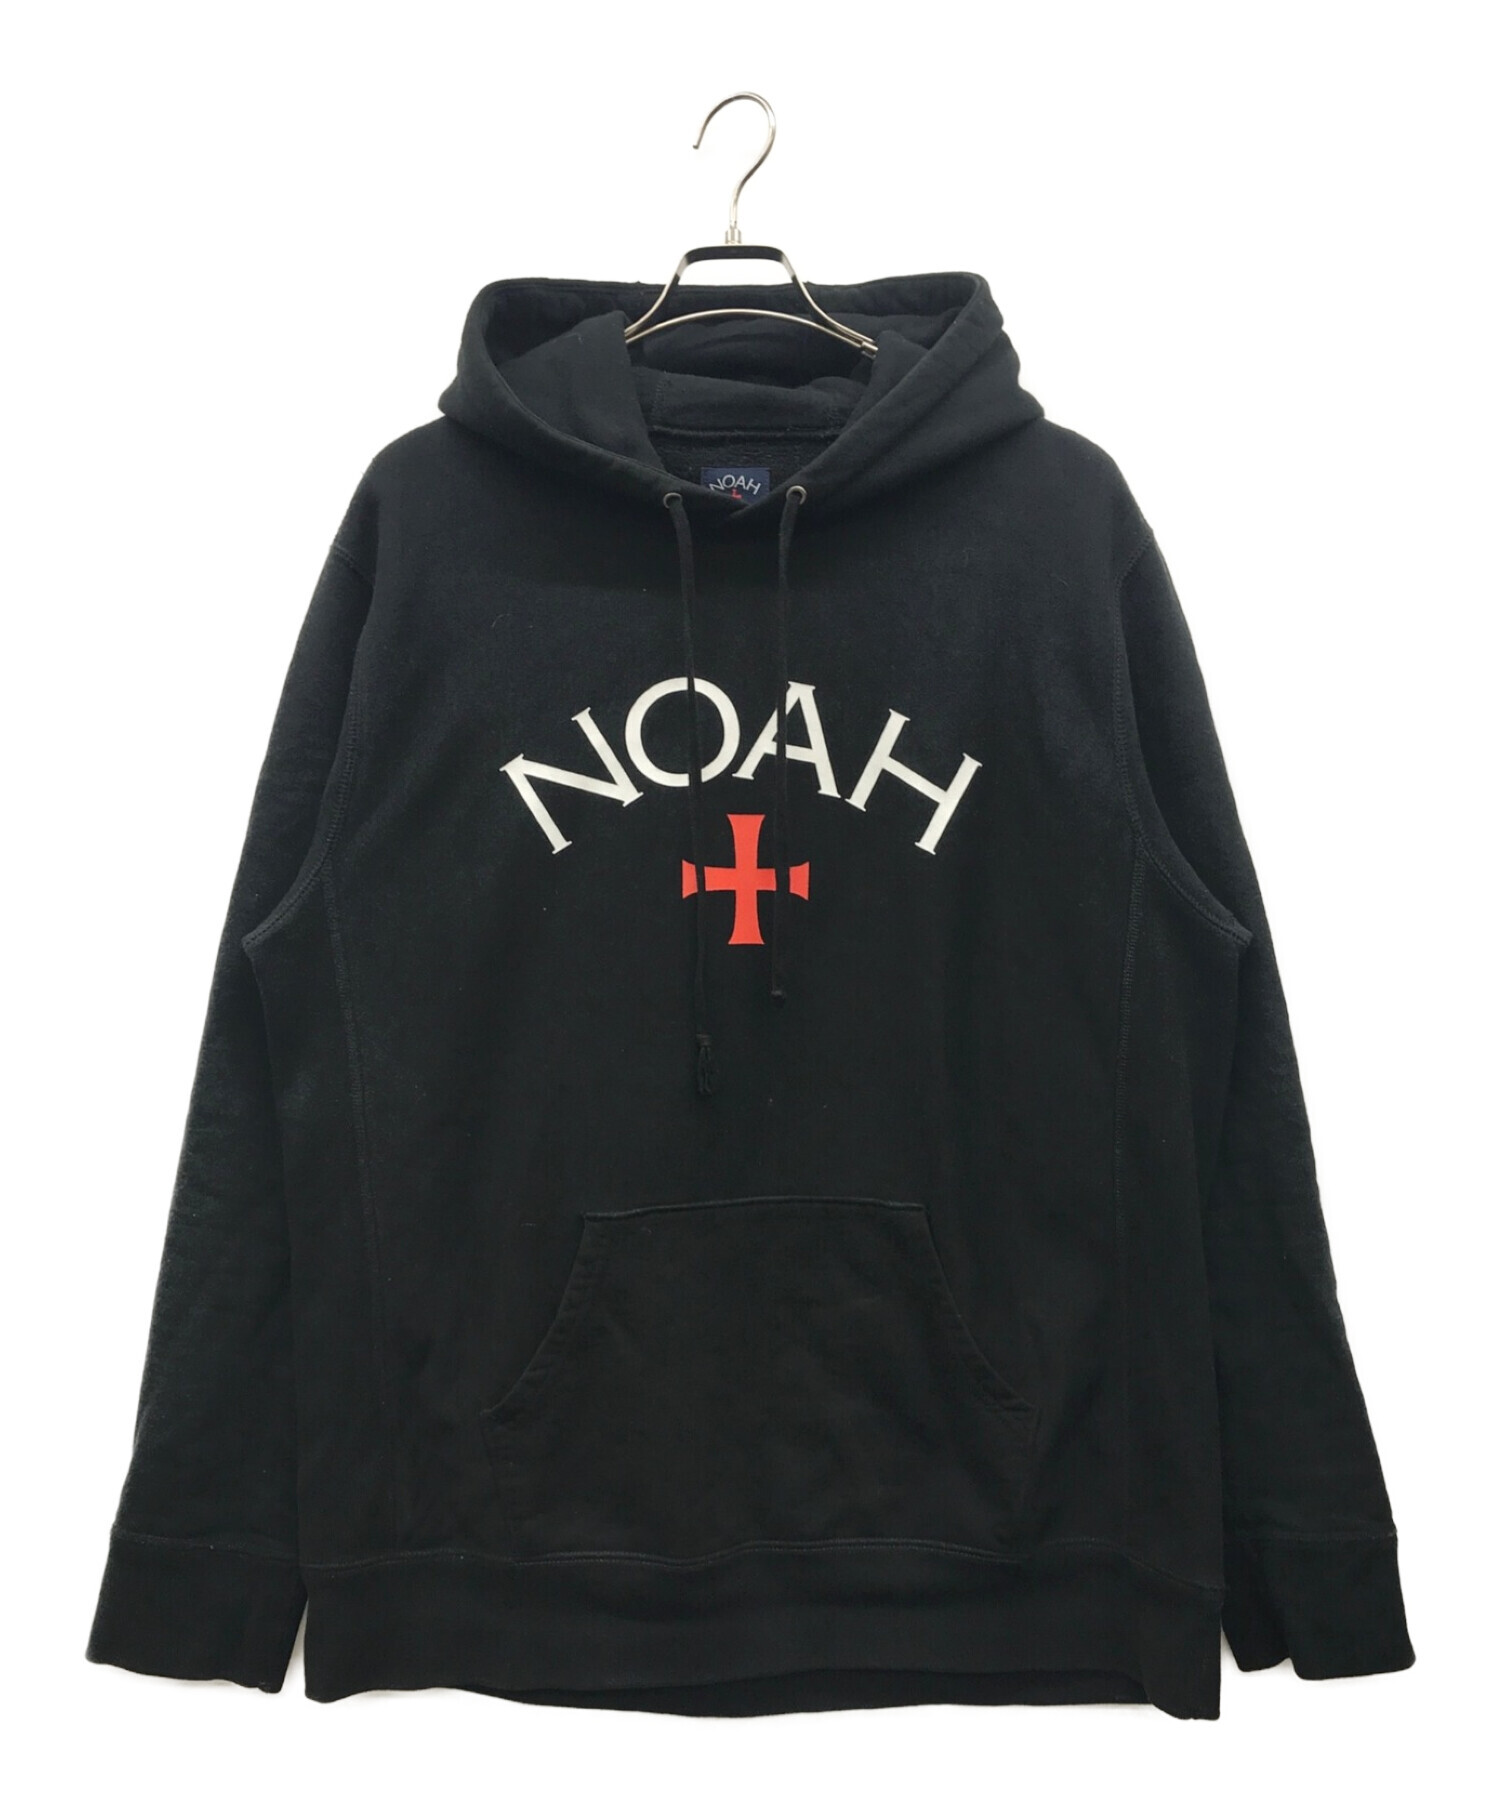 中古・古着通販】Noah (ノア) ロゴパーカー ブラック サイズ:XL ...